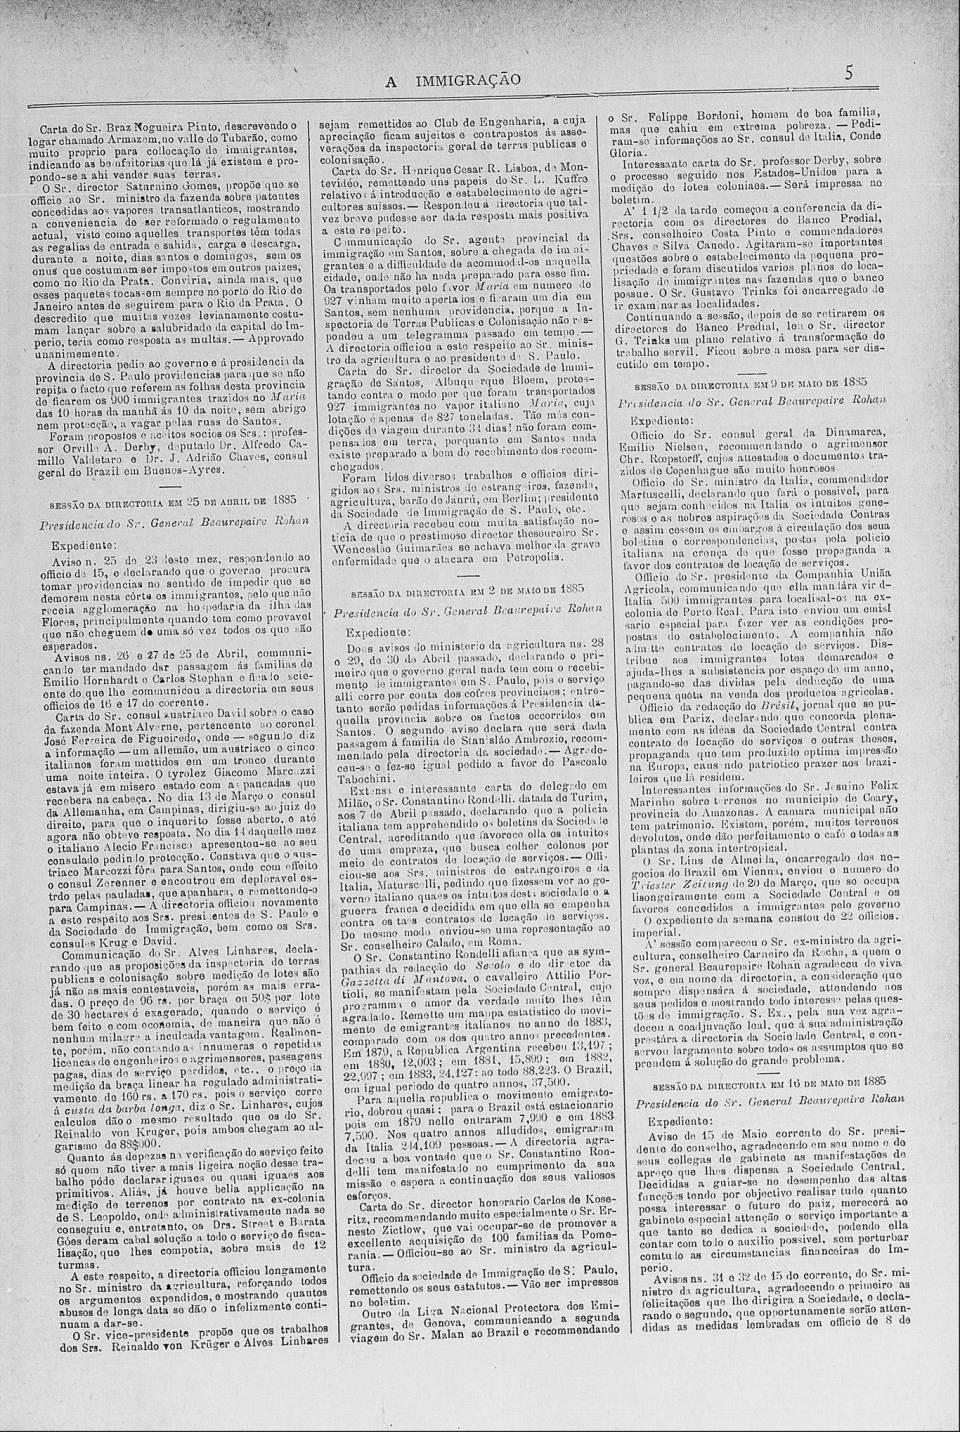 art-vapor-maria-em-santos-problemas-3-relatorio-a-imigracao-25-april-1885-folha